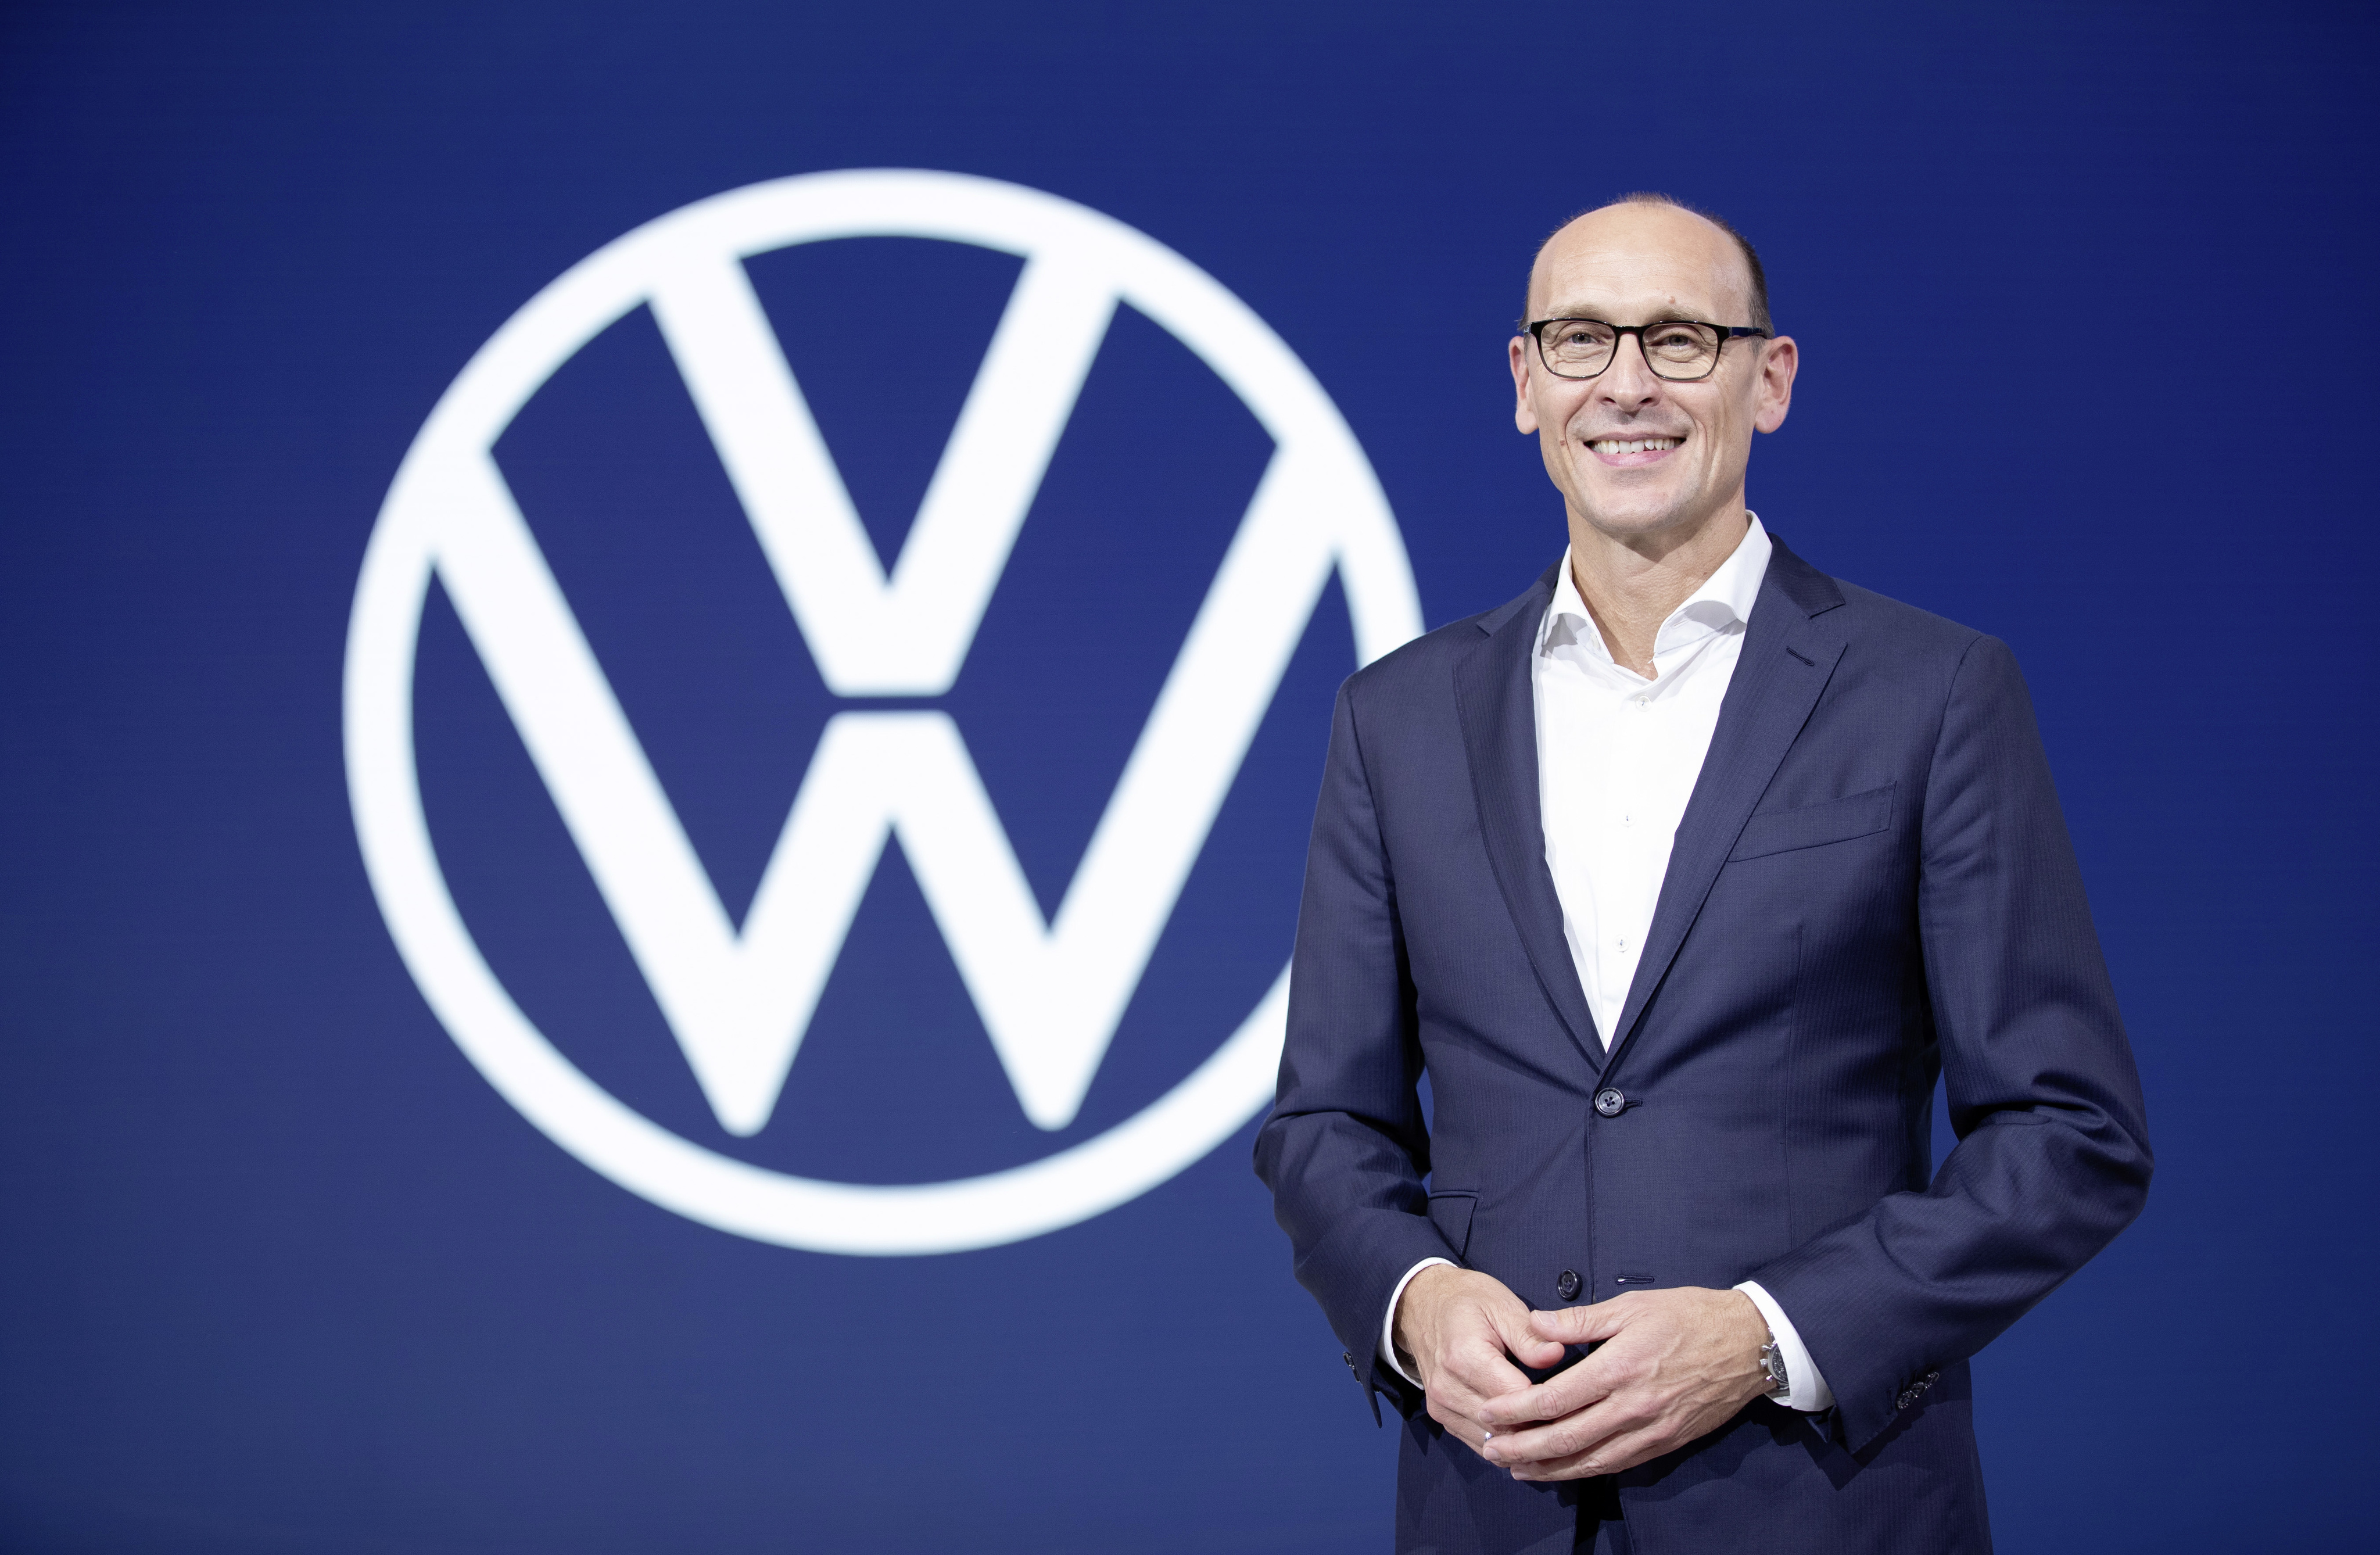 Ralf Brandsttter leitet knftig die Kernmarke VW Pkw (Foto: VW)